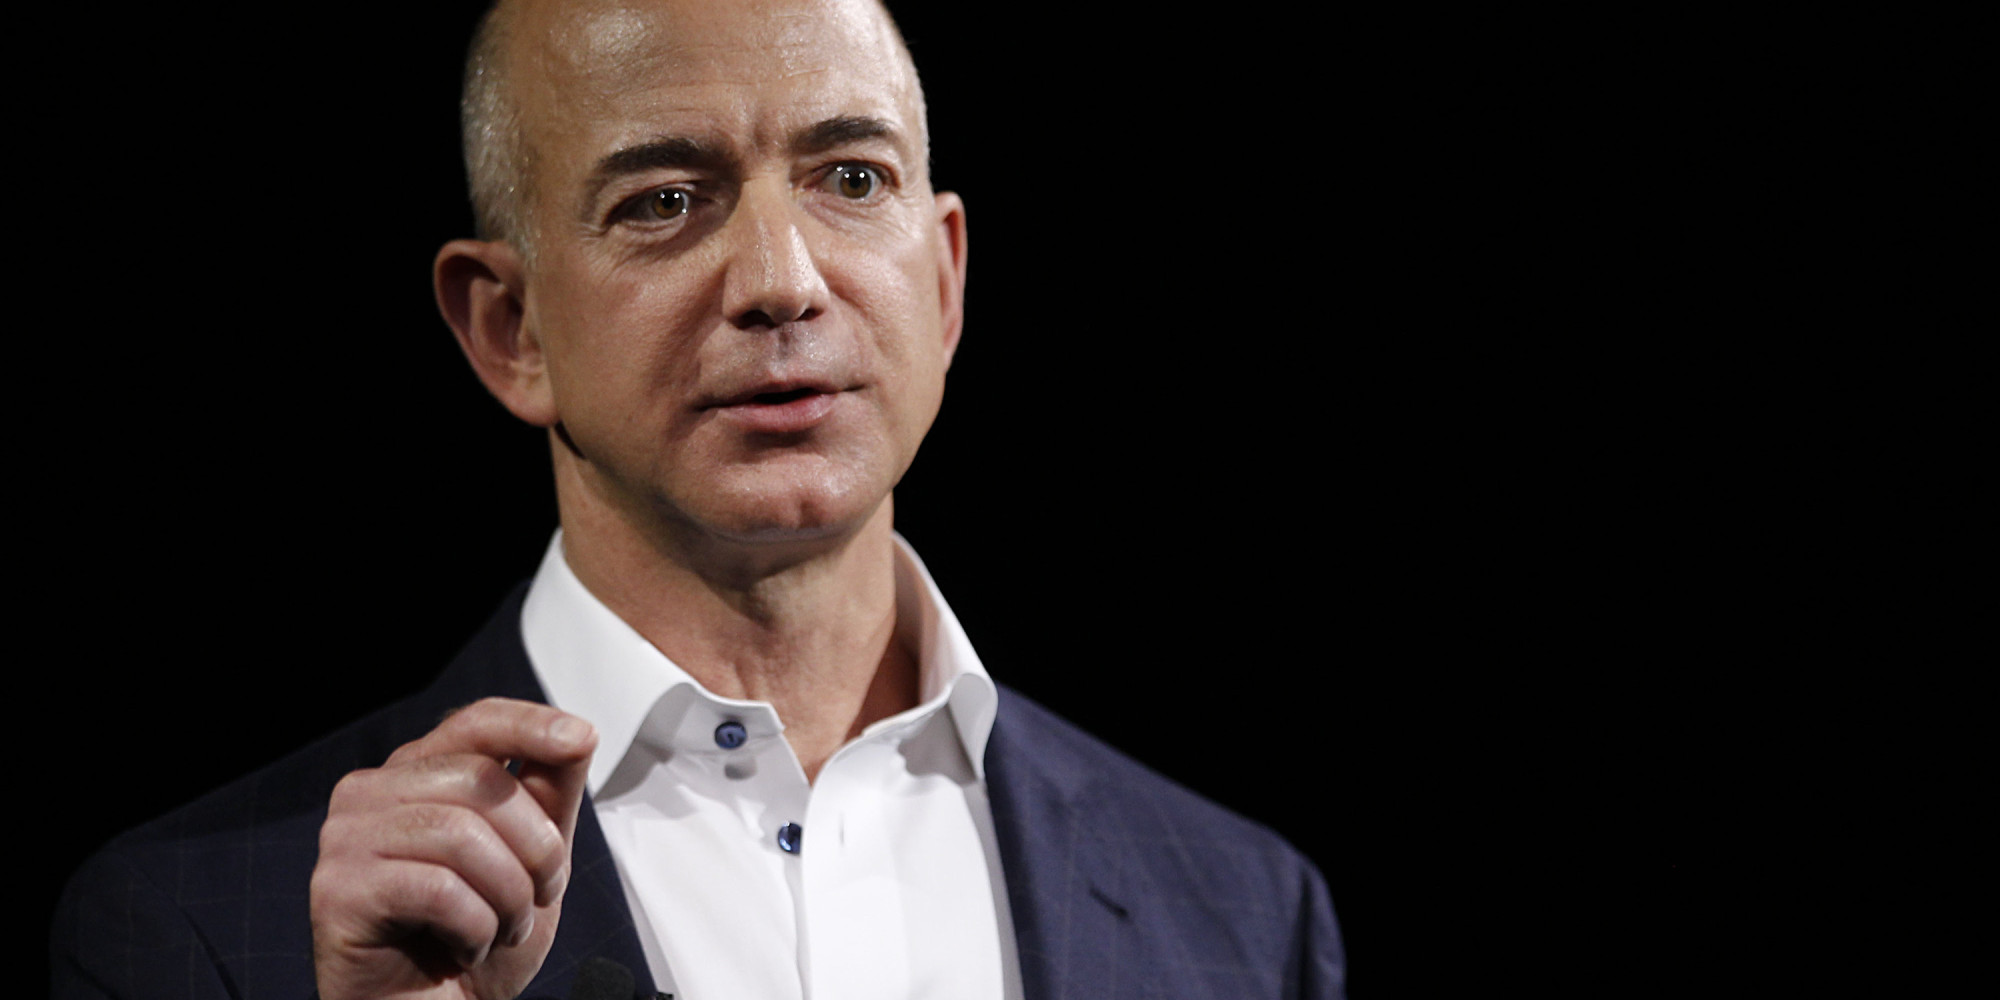 Cinco cosas curiosas sobre Jeff Bezos, el más rico del mundo